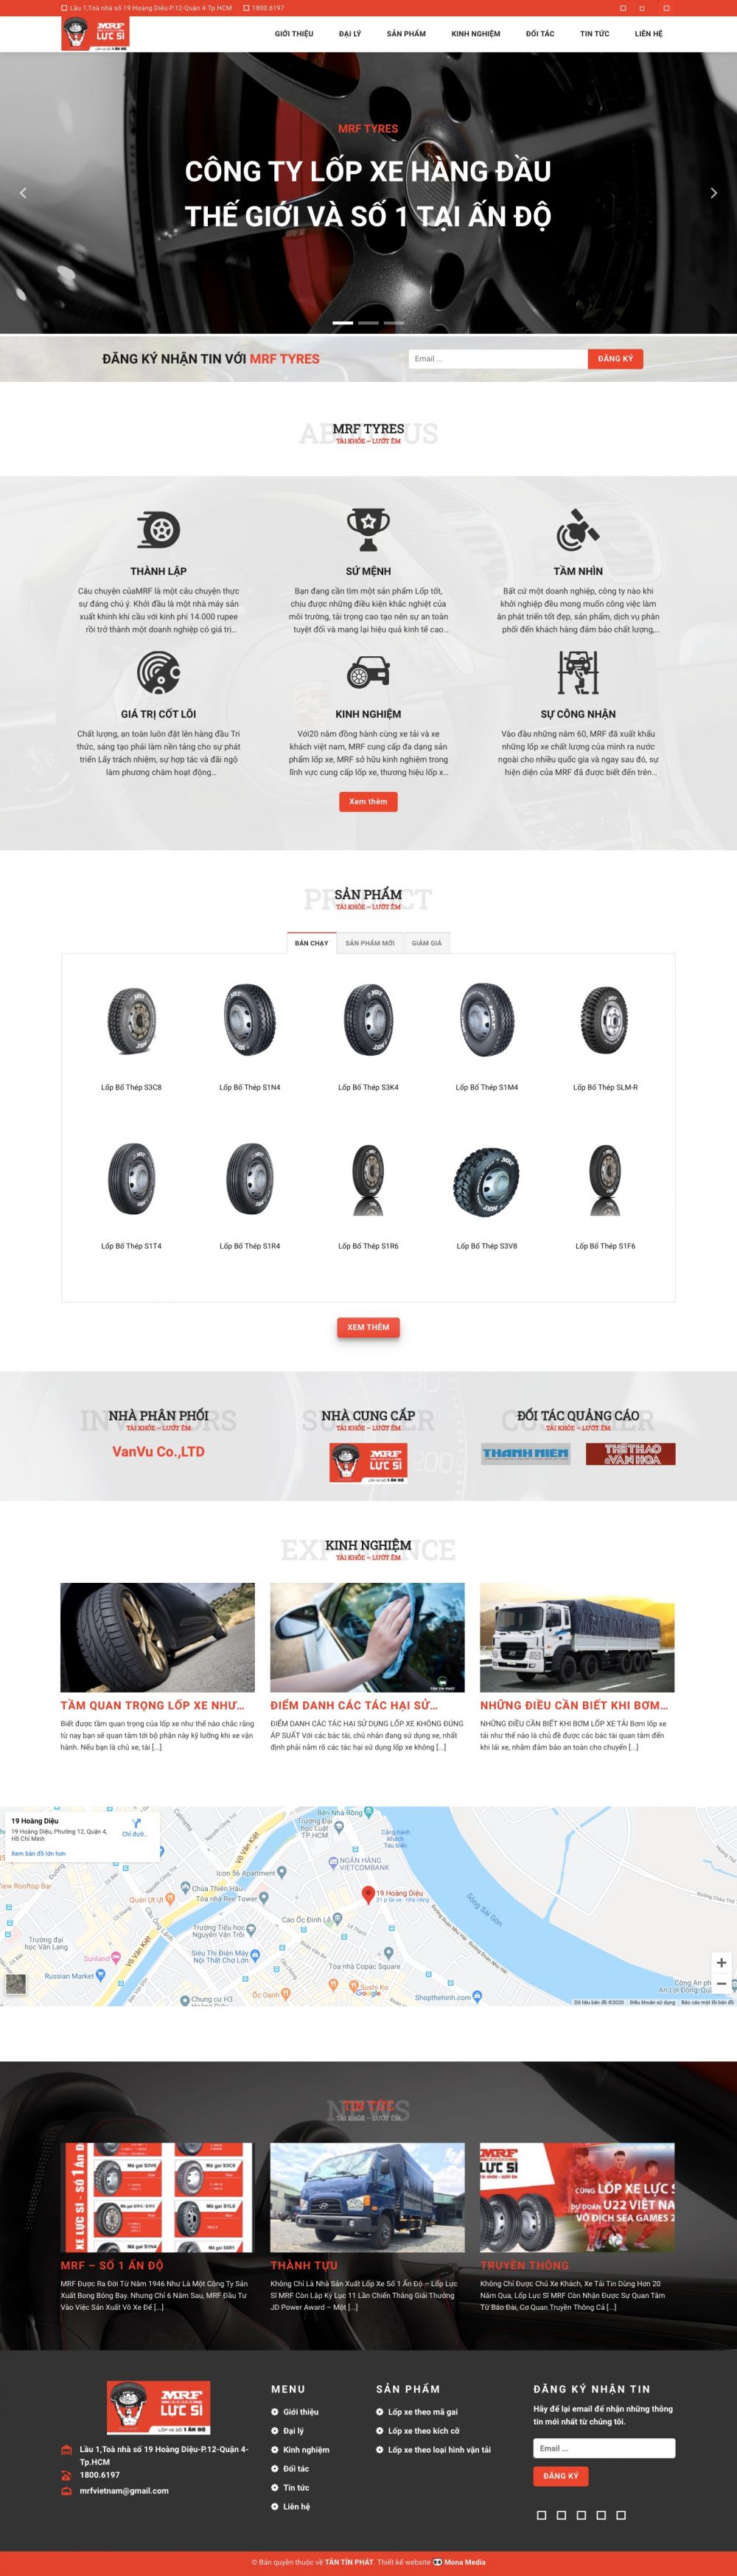 MRF – Công ty phân phối lốp xe từ Ấn Độ